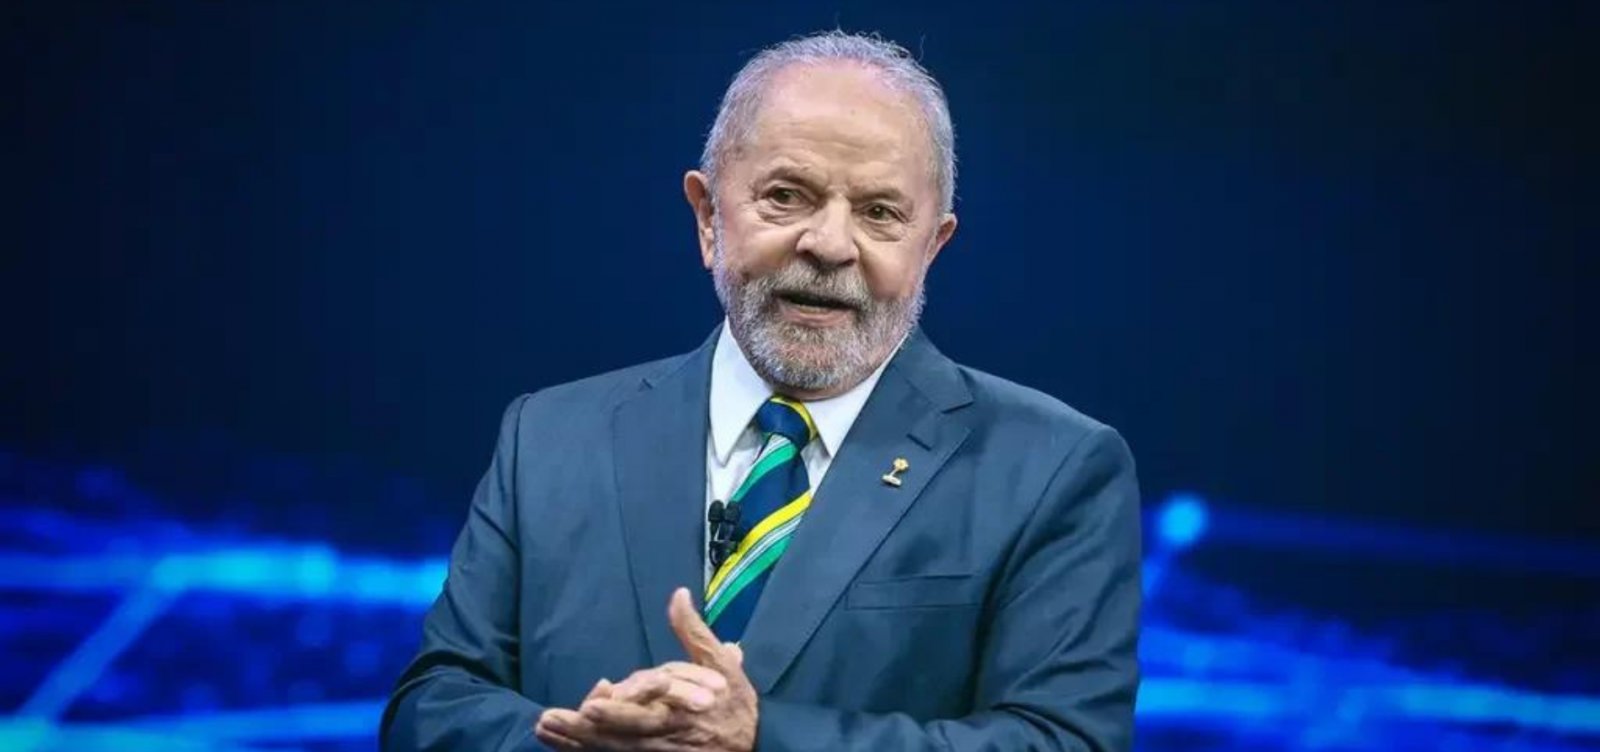 Lula faz apelo por libertação de crianças reféns e intervenção humanitária em conflito no Oriente Médio